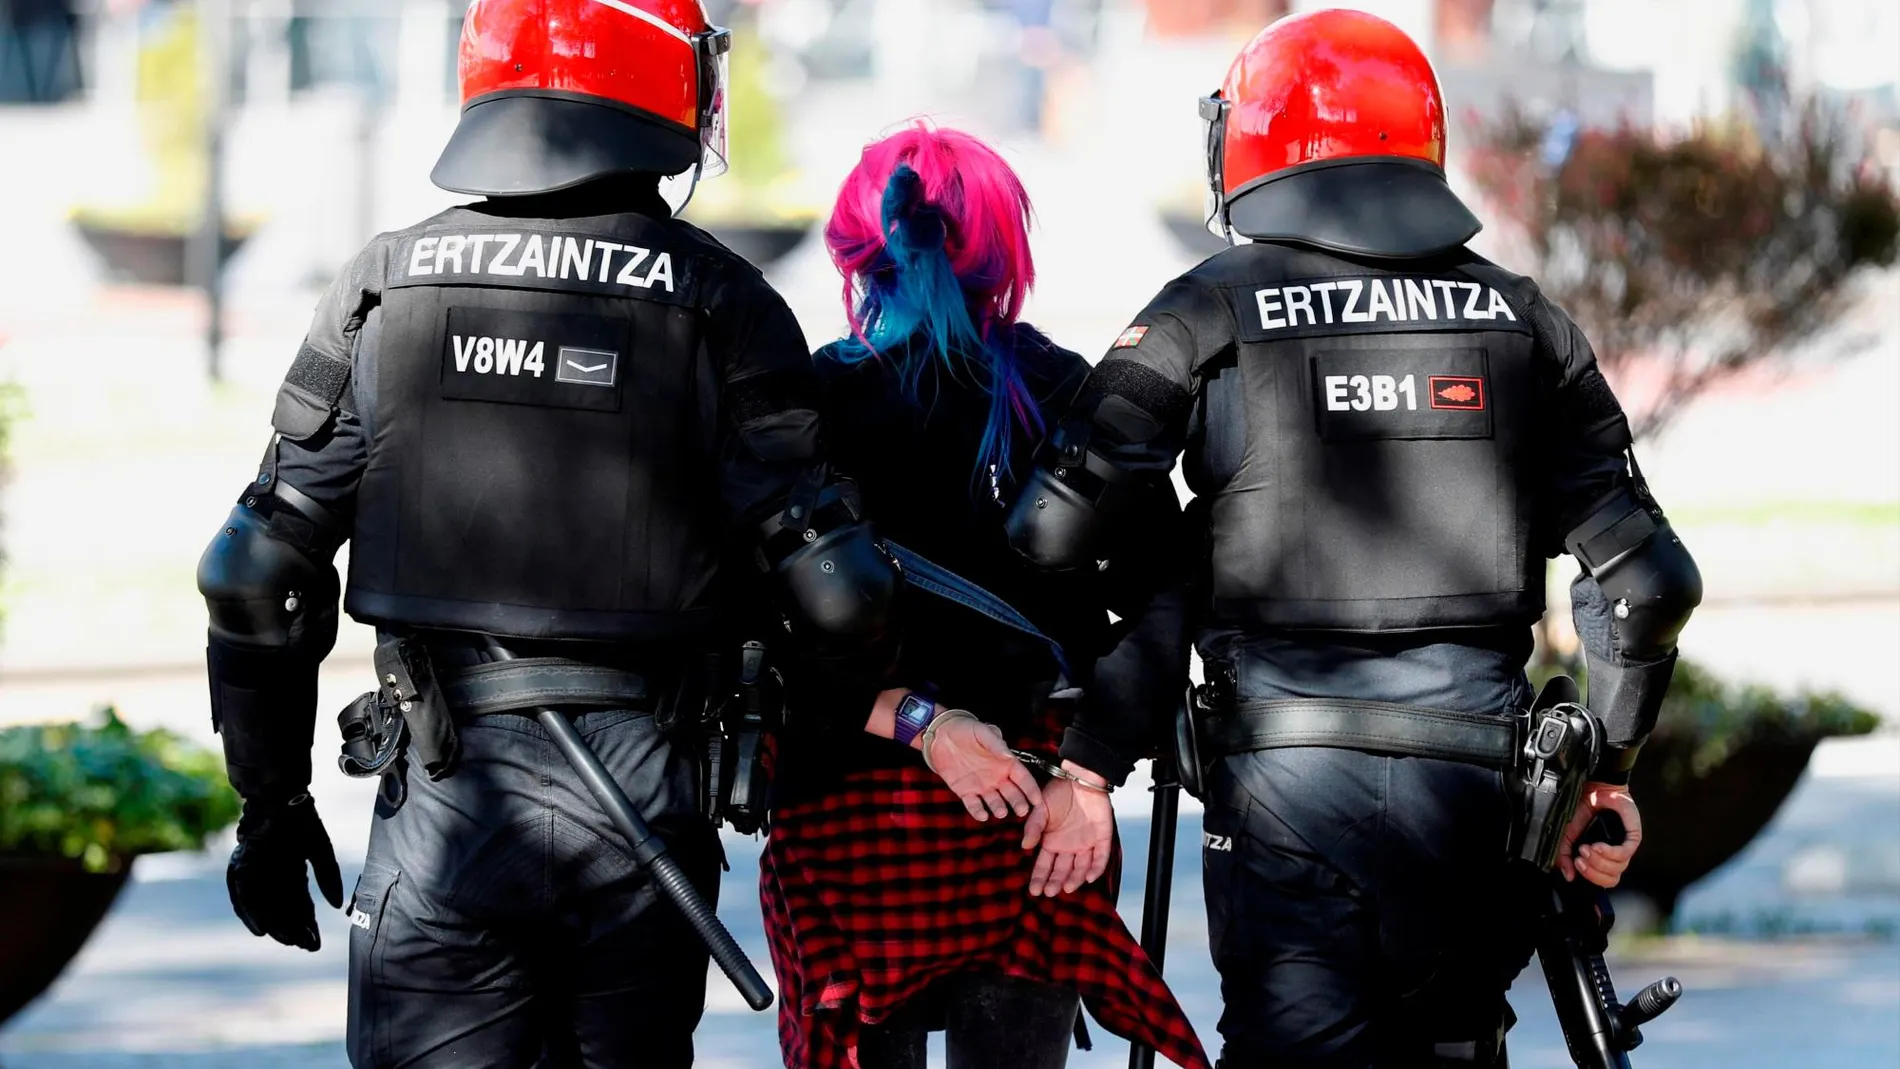 Una joven es detenida por agentes de la Ertzaintza en Bilbao, donde esta tarde participa el líder de Vox, Santiago Abascal en un acto electoral. EFE/ Luis Tejido